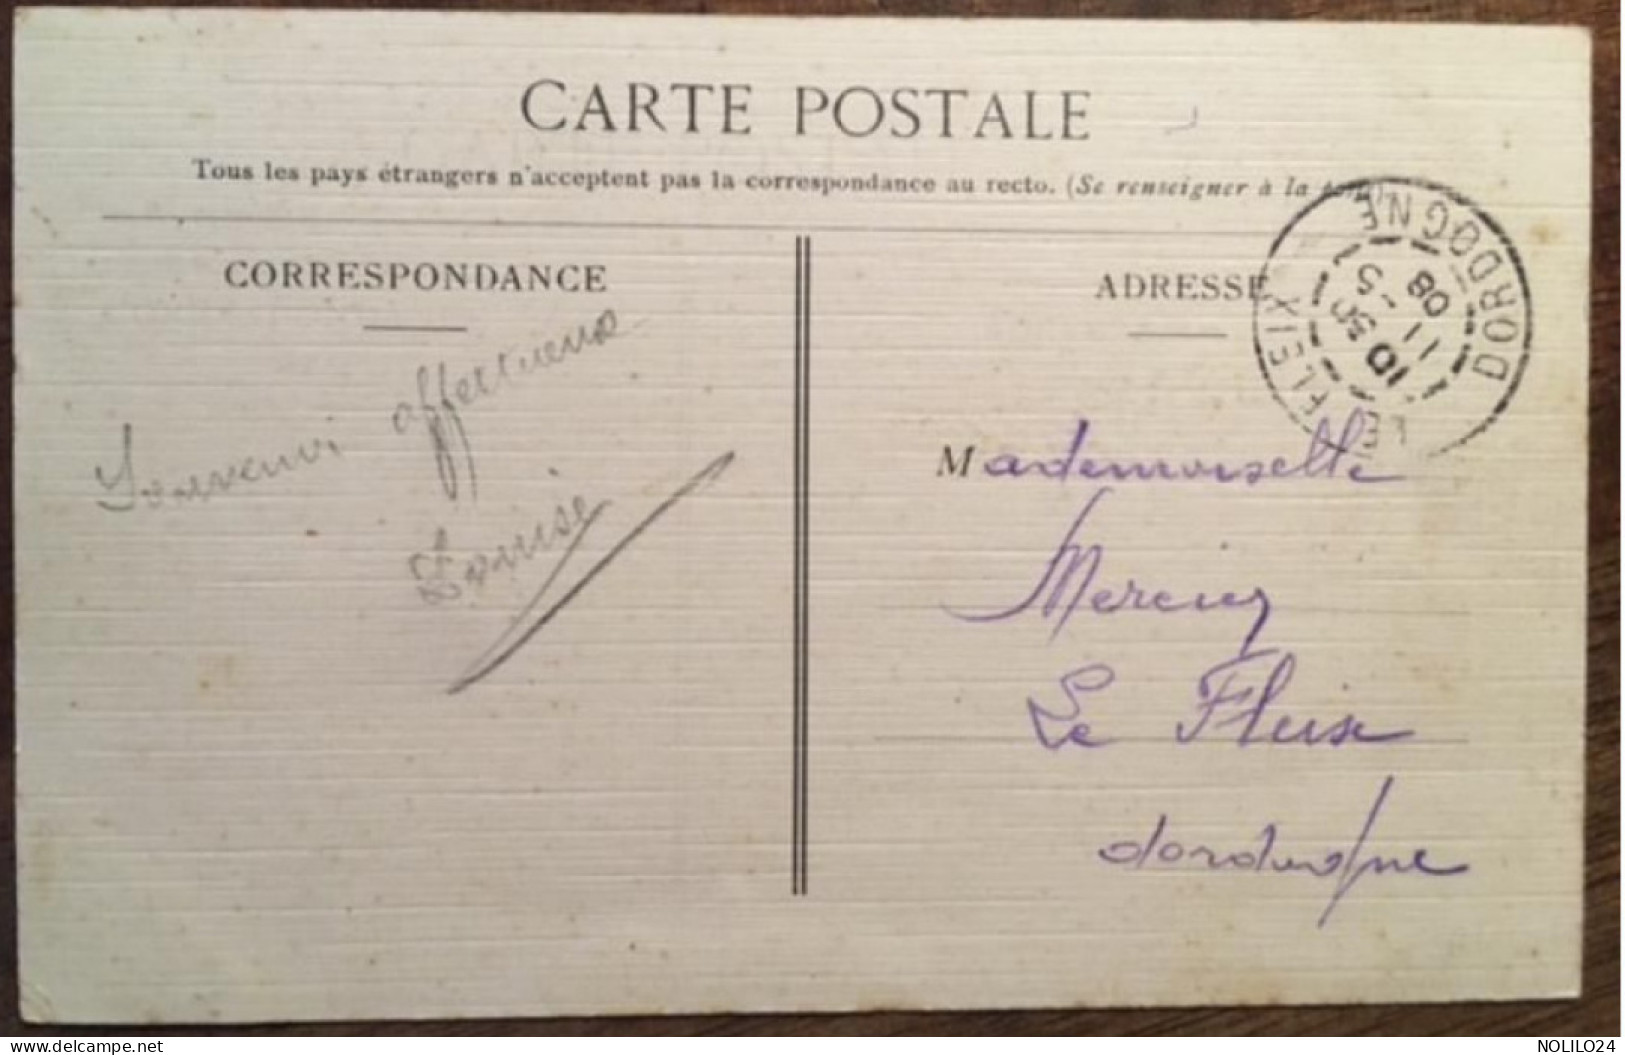 Cpa 24 Dordogne, Colorisée Toilée LA FORCE (LAFORCE), Près Bergerac, Bœufs Au Pâturage, éd Flouret, écrite En 1908 - Sonstige & Ohne Zuordnung